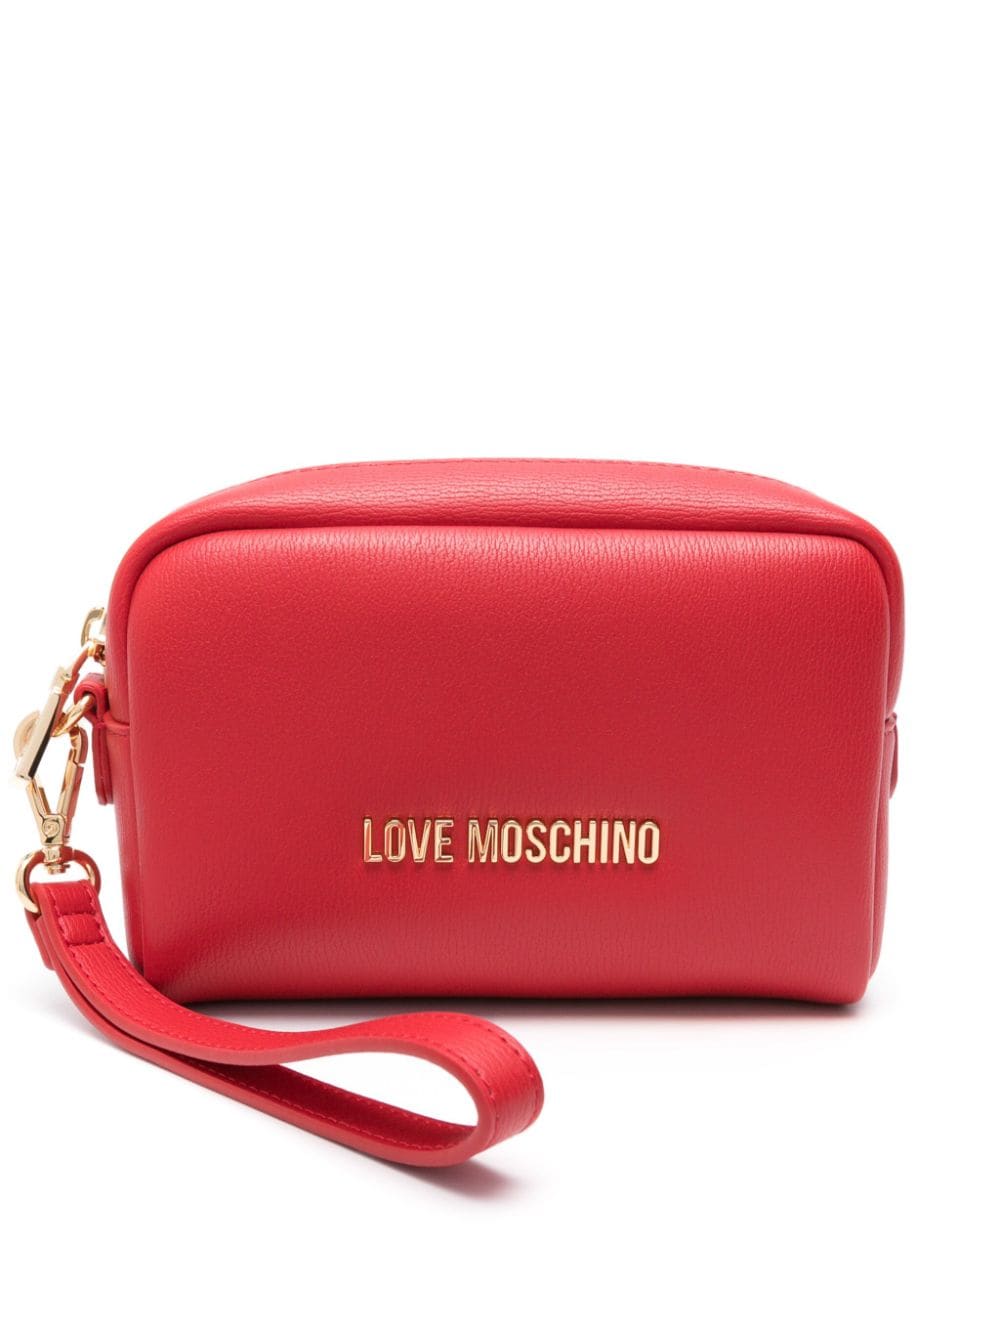 Love Moschino logo-plaque makeup bag